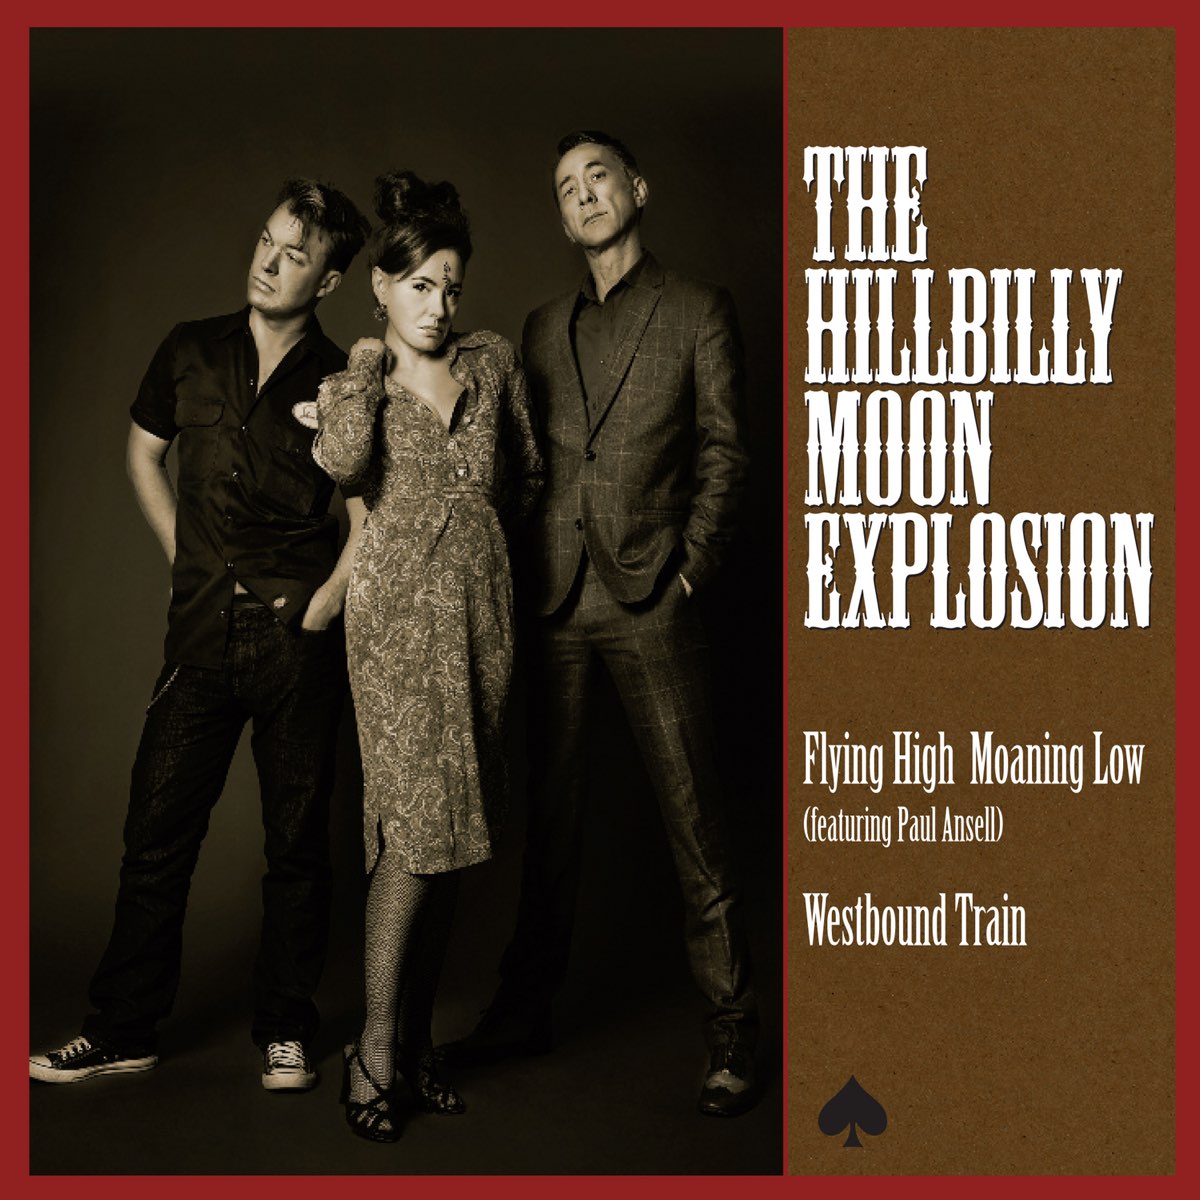 The hillbilly moon. The Hillbilly Moon explosion альбомы 2013. Группа Hillbilly Moon explosion. The Hillbilly Moon explosion альбомы 2010. The Hillbilly Moon explosion альбомы 2004.